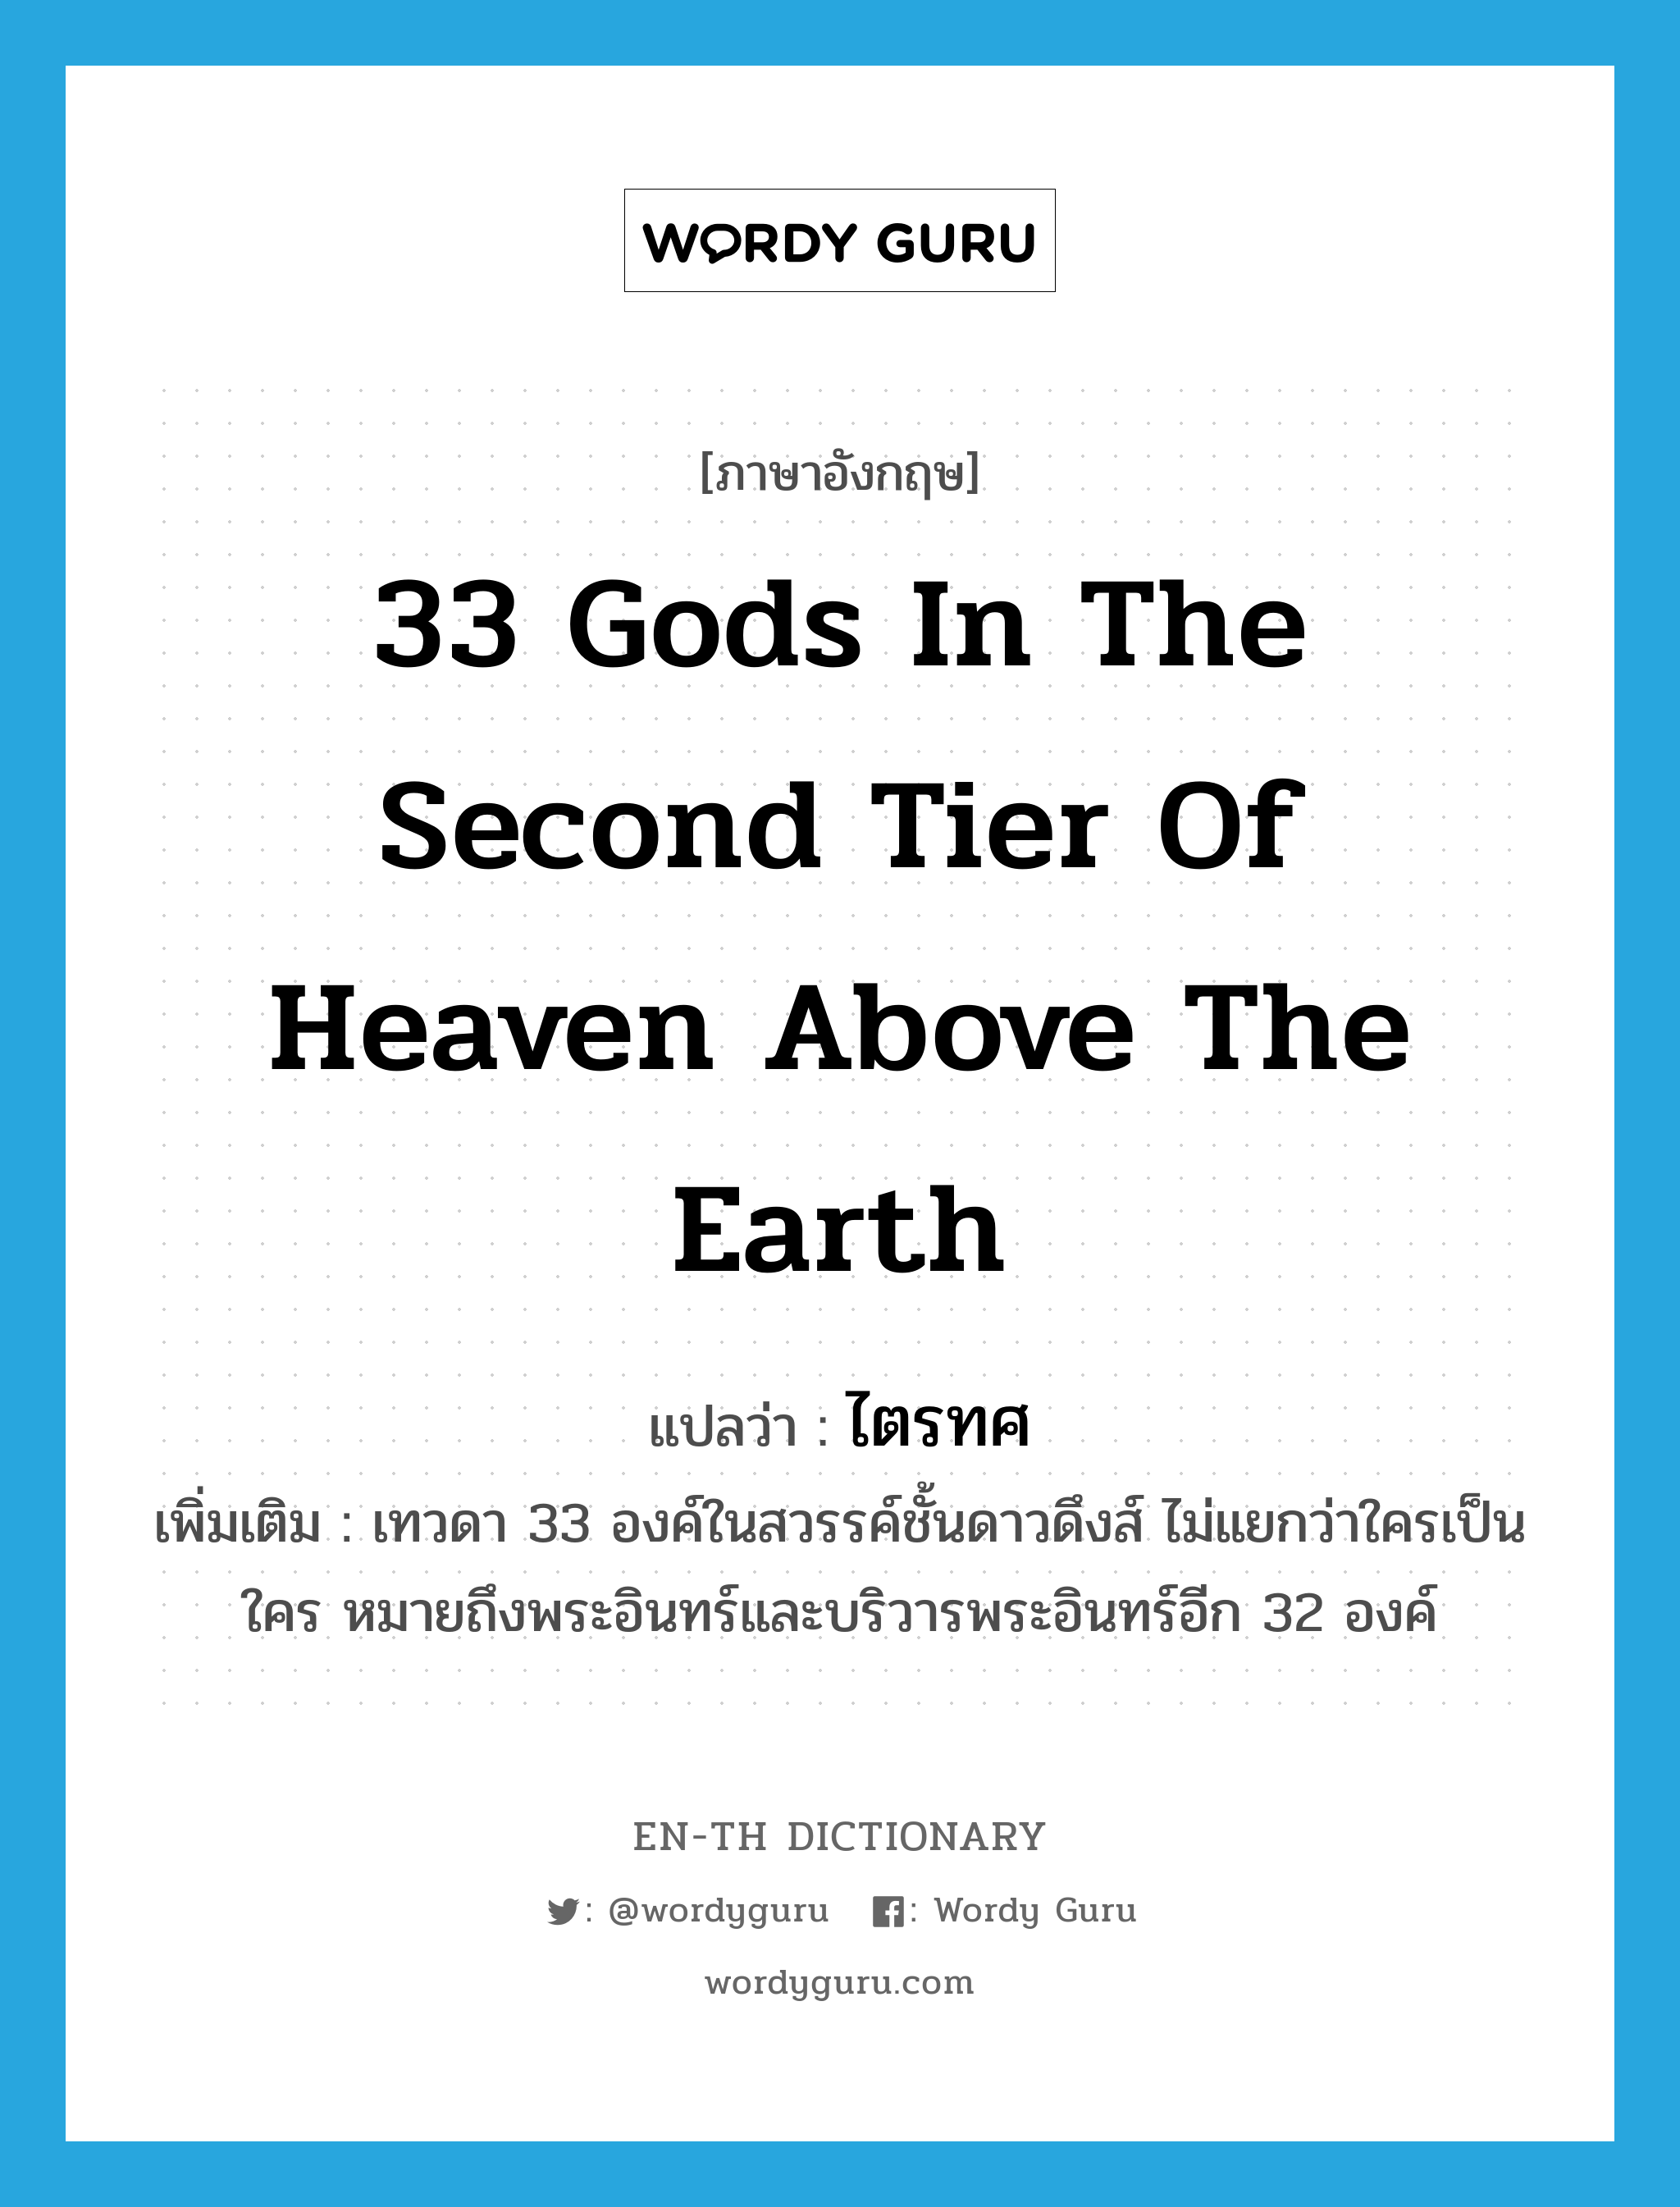 ไตรทศ ภาษาอังกฤษ?, คำศัพท์ภาษาอังกฤษ ไตรทศ แปลว่า 33 Gods in the second tier of heaven above the earth ประเภท N เพิ่มเติม เทวดา 33 องค์ในสวรรค์ชั้นดาวดึงส์ ไม่แยกว่าใครเป็นใคร หมายถึงพระอินทร์และบริวารพระอินทร์อีก 32 องค์ หมวด N